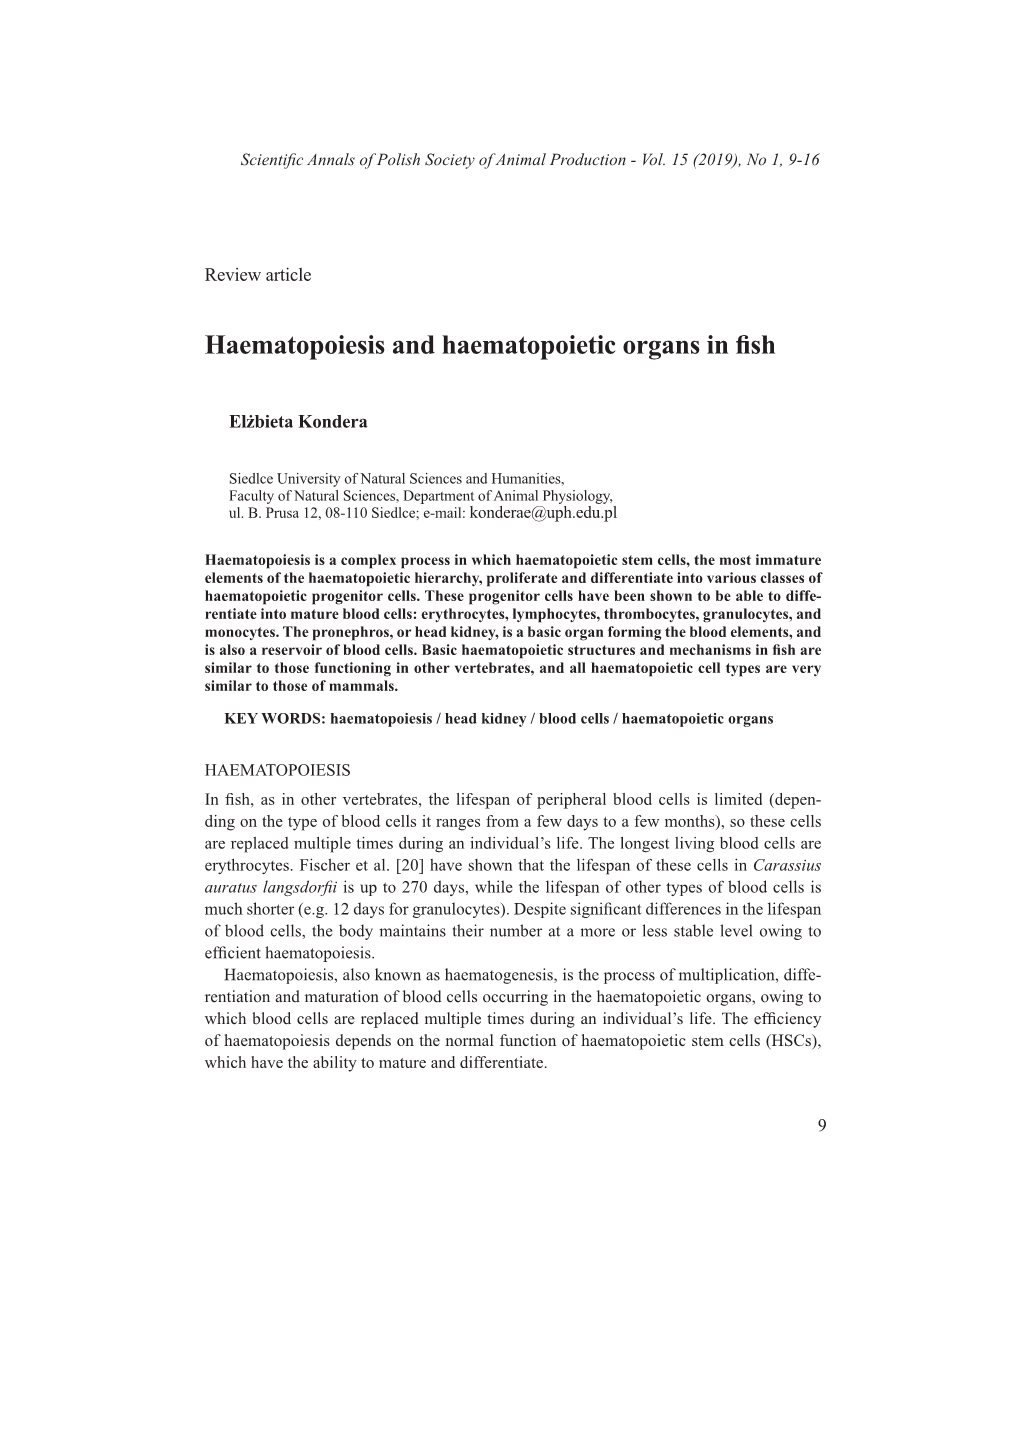 Haematopoiesis and Haematopoietic Organs in Fish